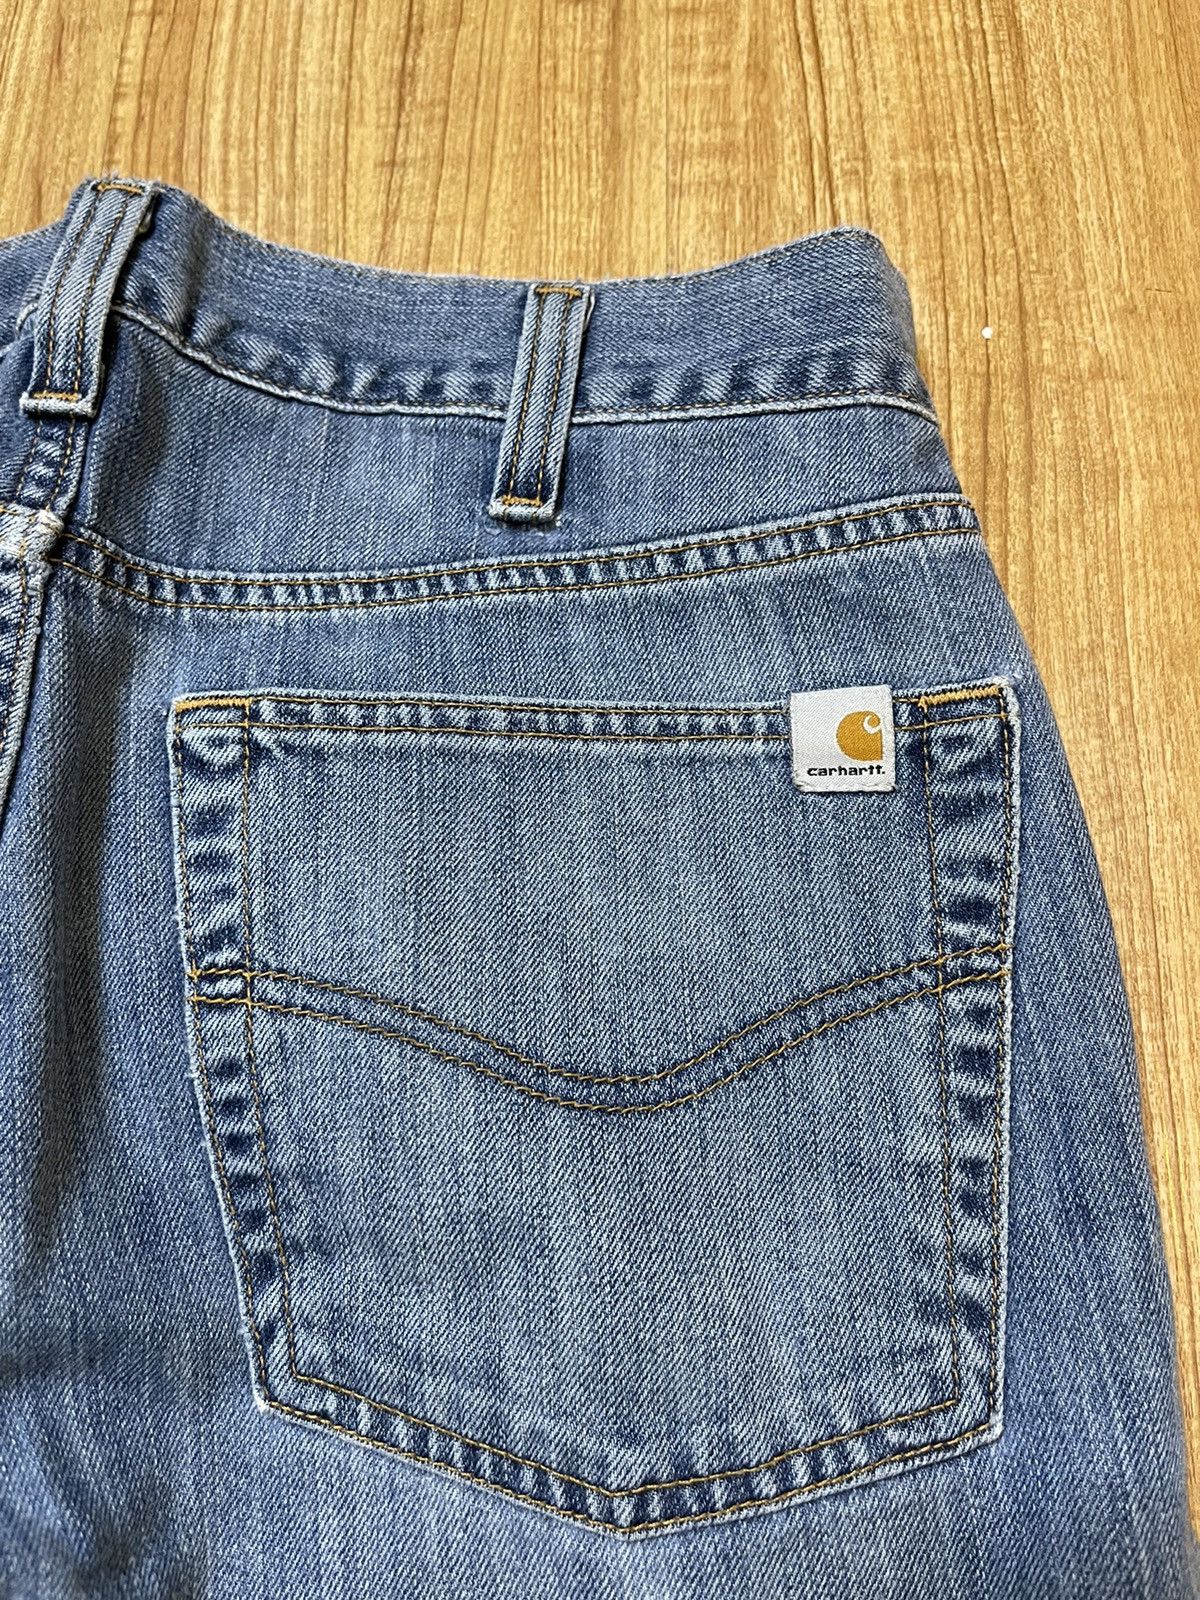 Carhartt Blue Carhartt jean pants Size US 32 / EU 48 - 6 Preview